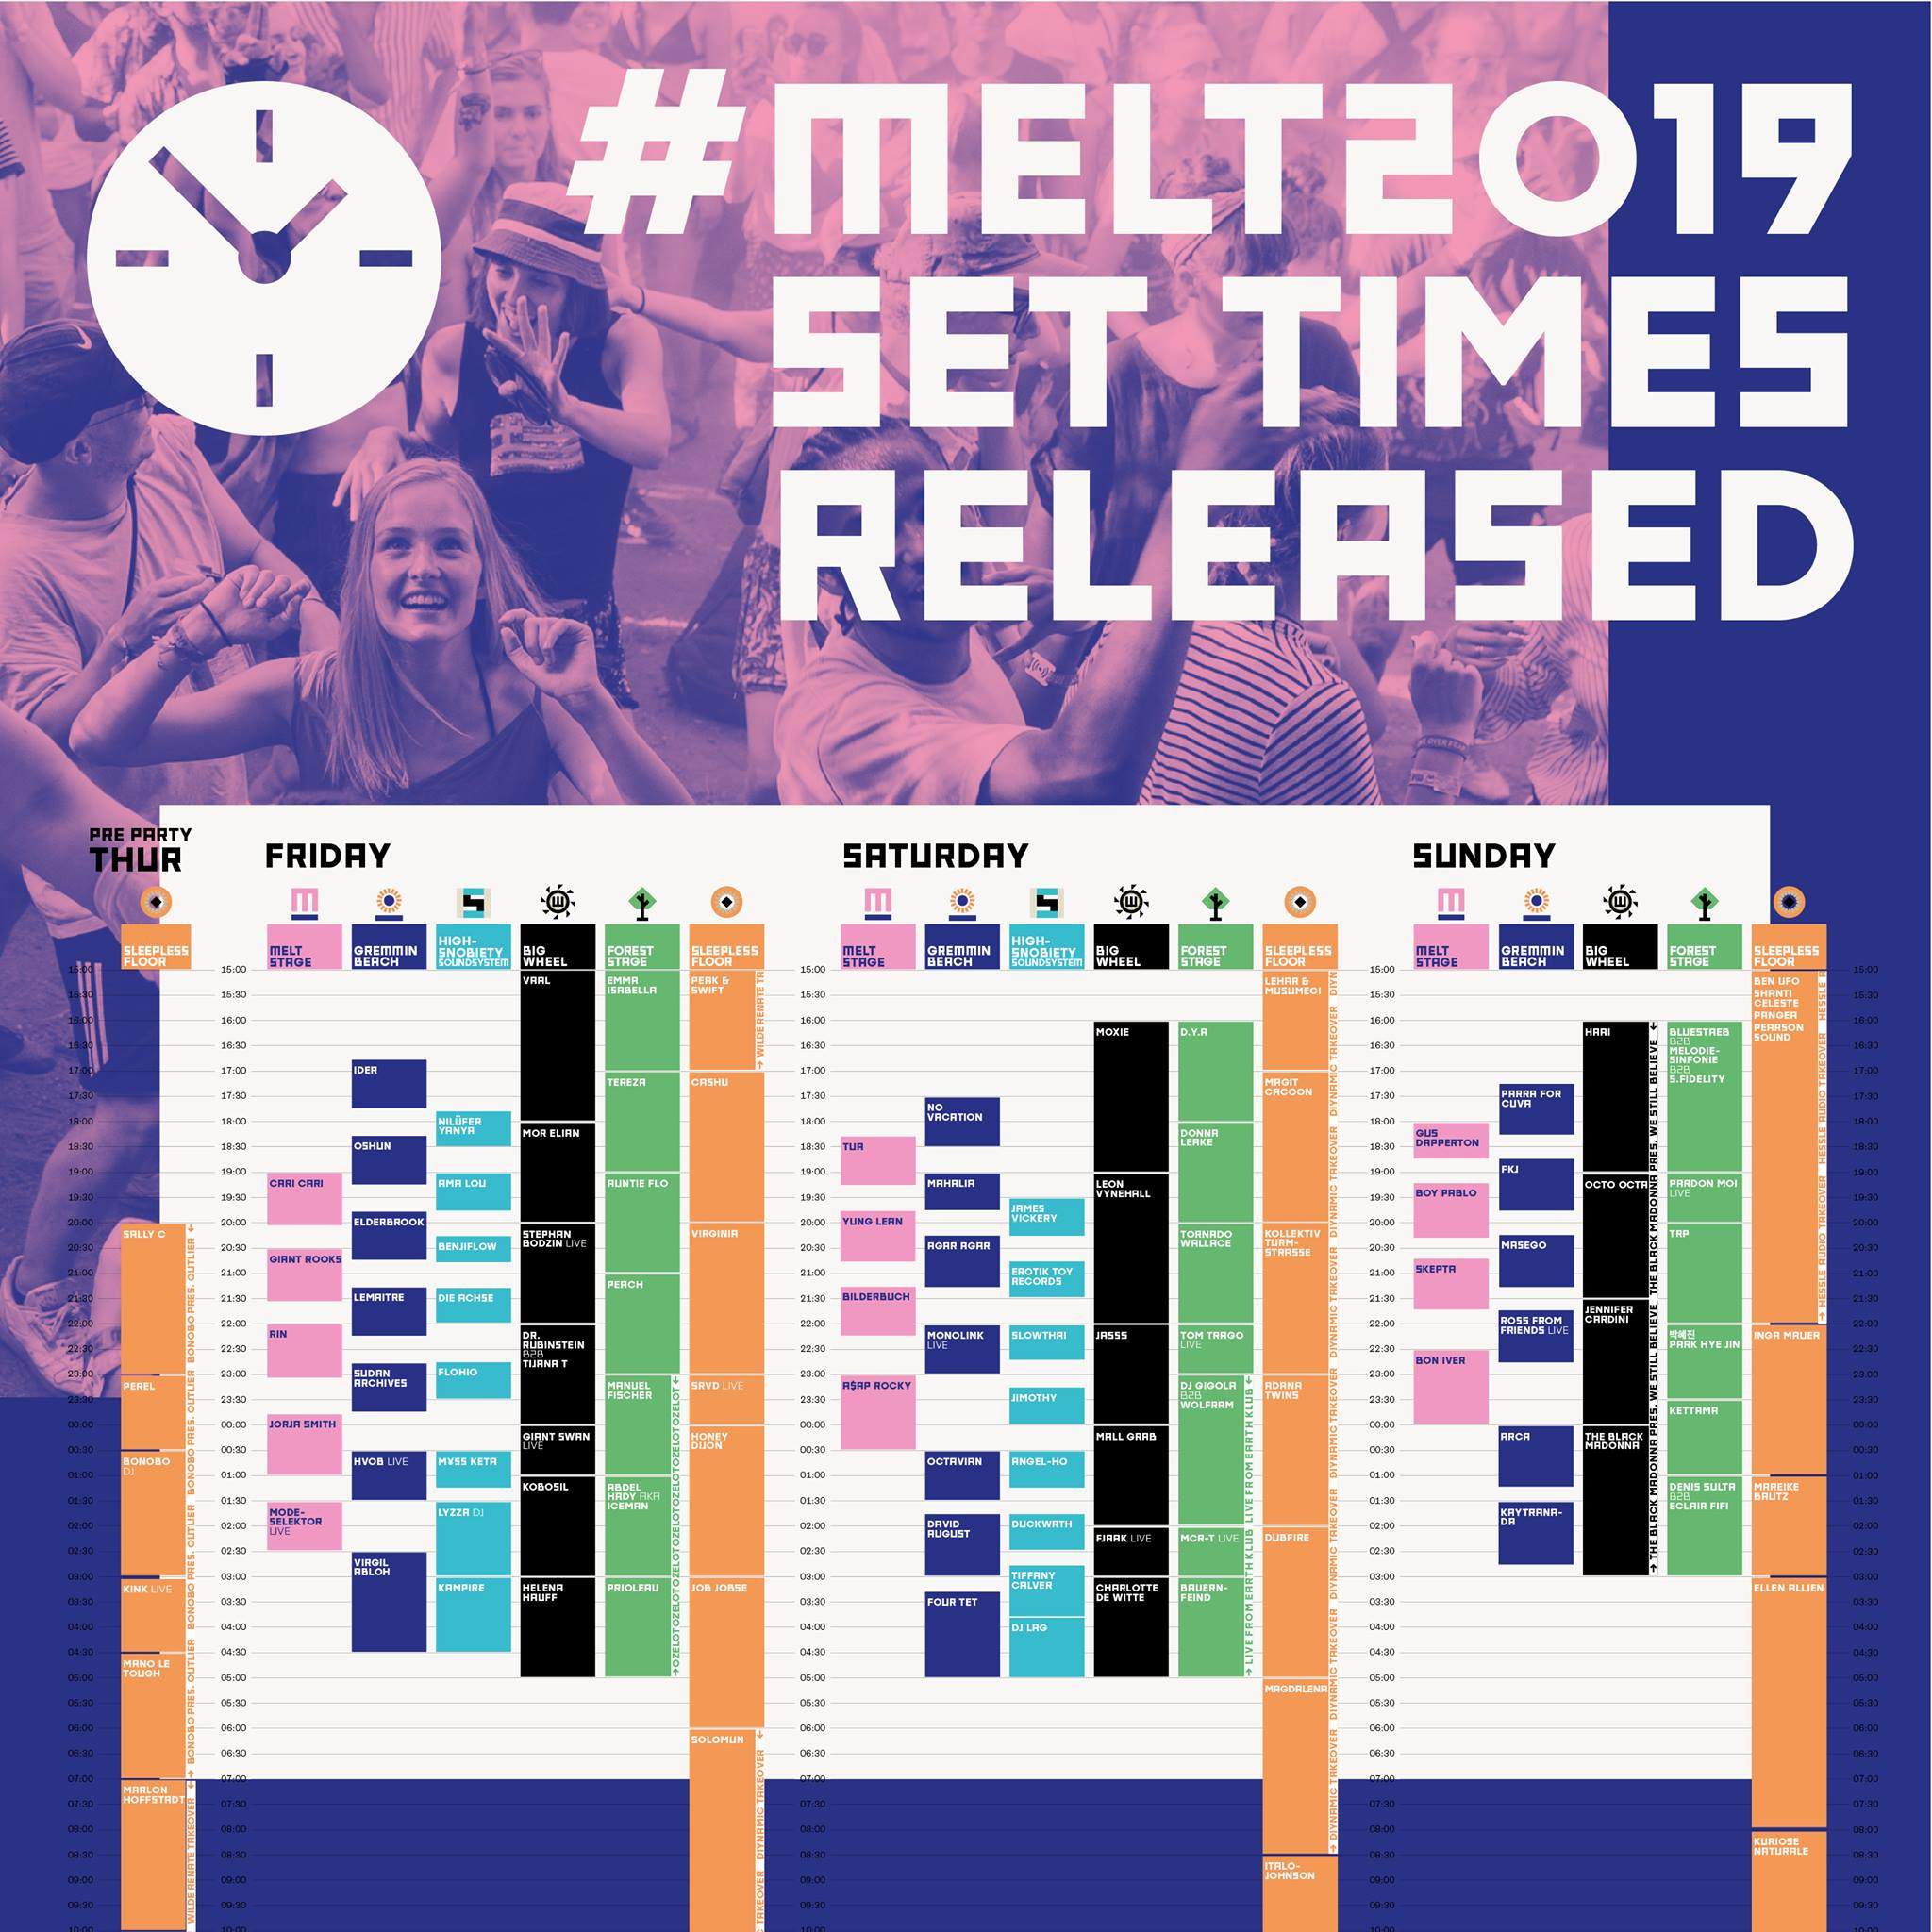 Melt Festival releases running order image